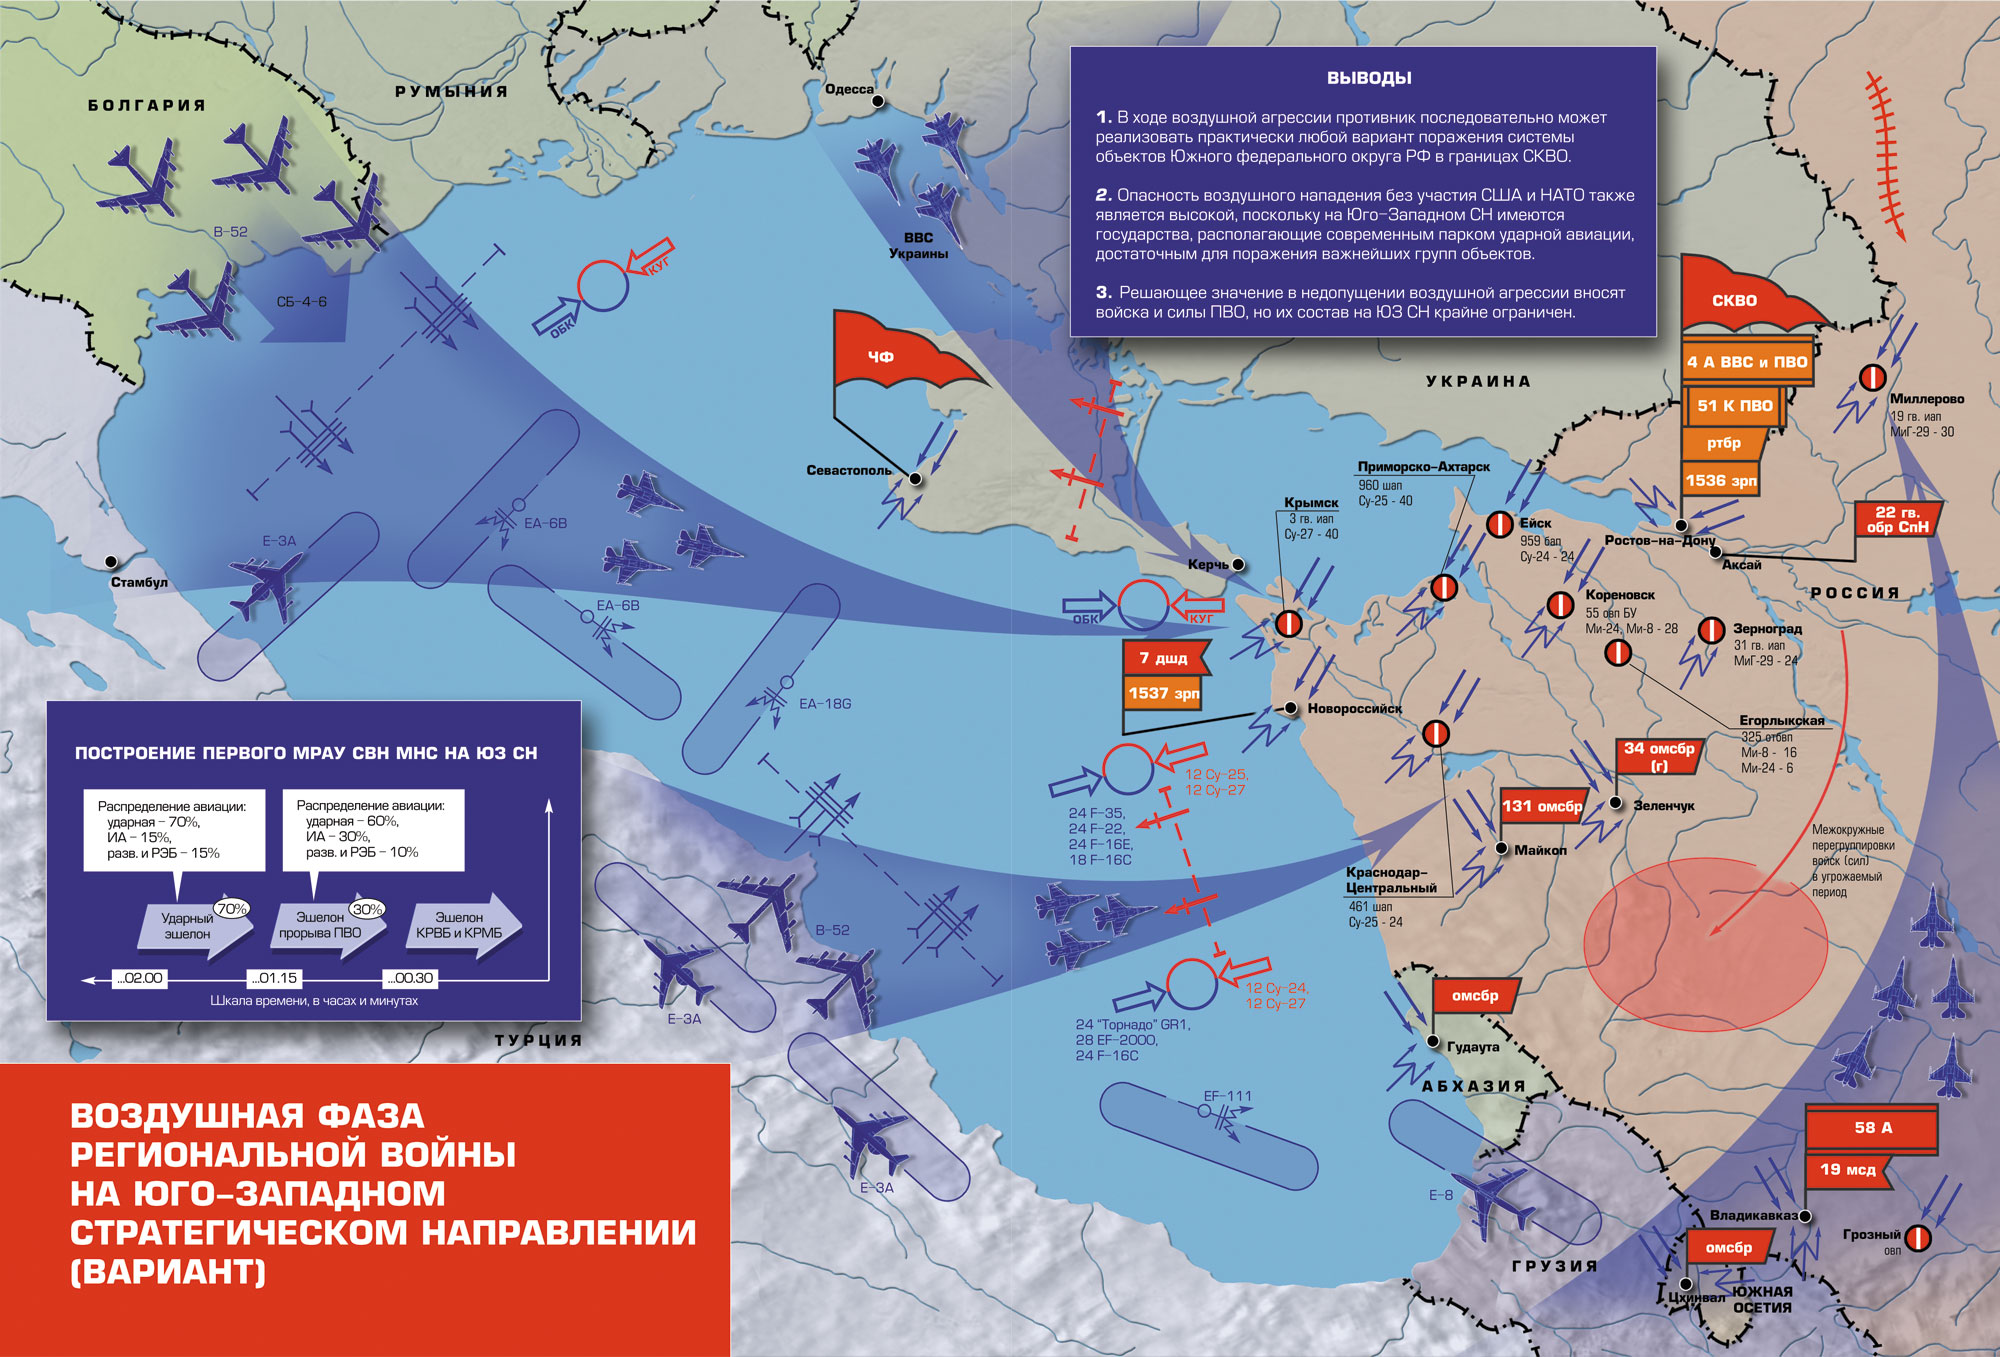 Карта нападения на россию. ПВО НАТО на карте. Военные стратегические направления. Юго-Западное стратегическое направление. Западное стратегическое направление России.